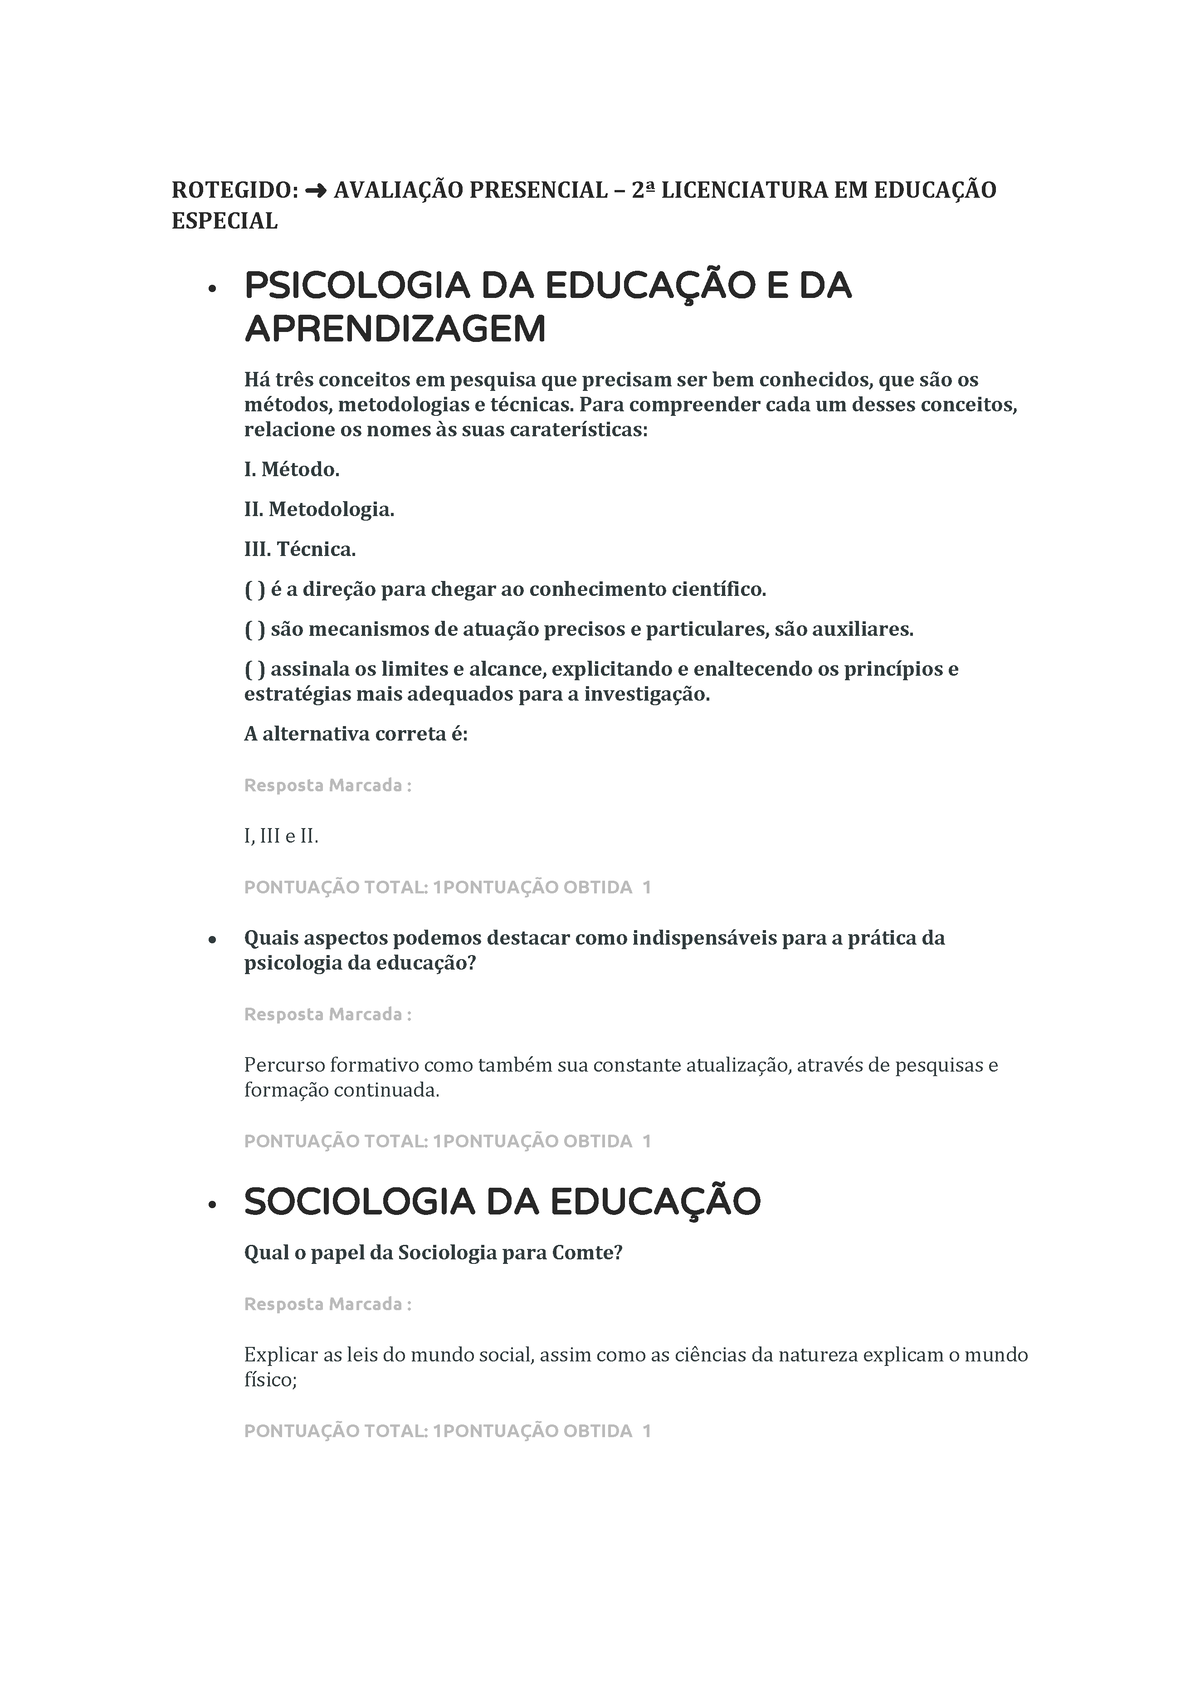 AVALIAÇÃO PRESENCIAL - 3º PERÍODO - PEDAGOGIA - (2) (1) - Pedagogia